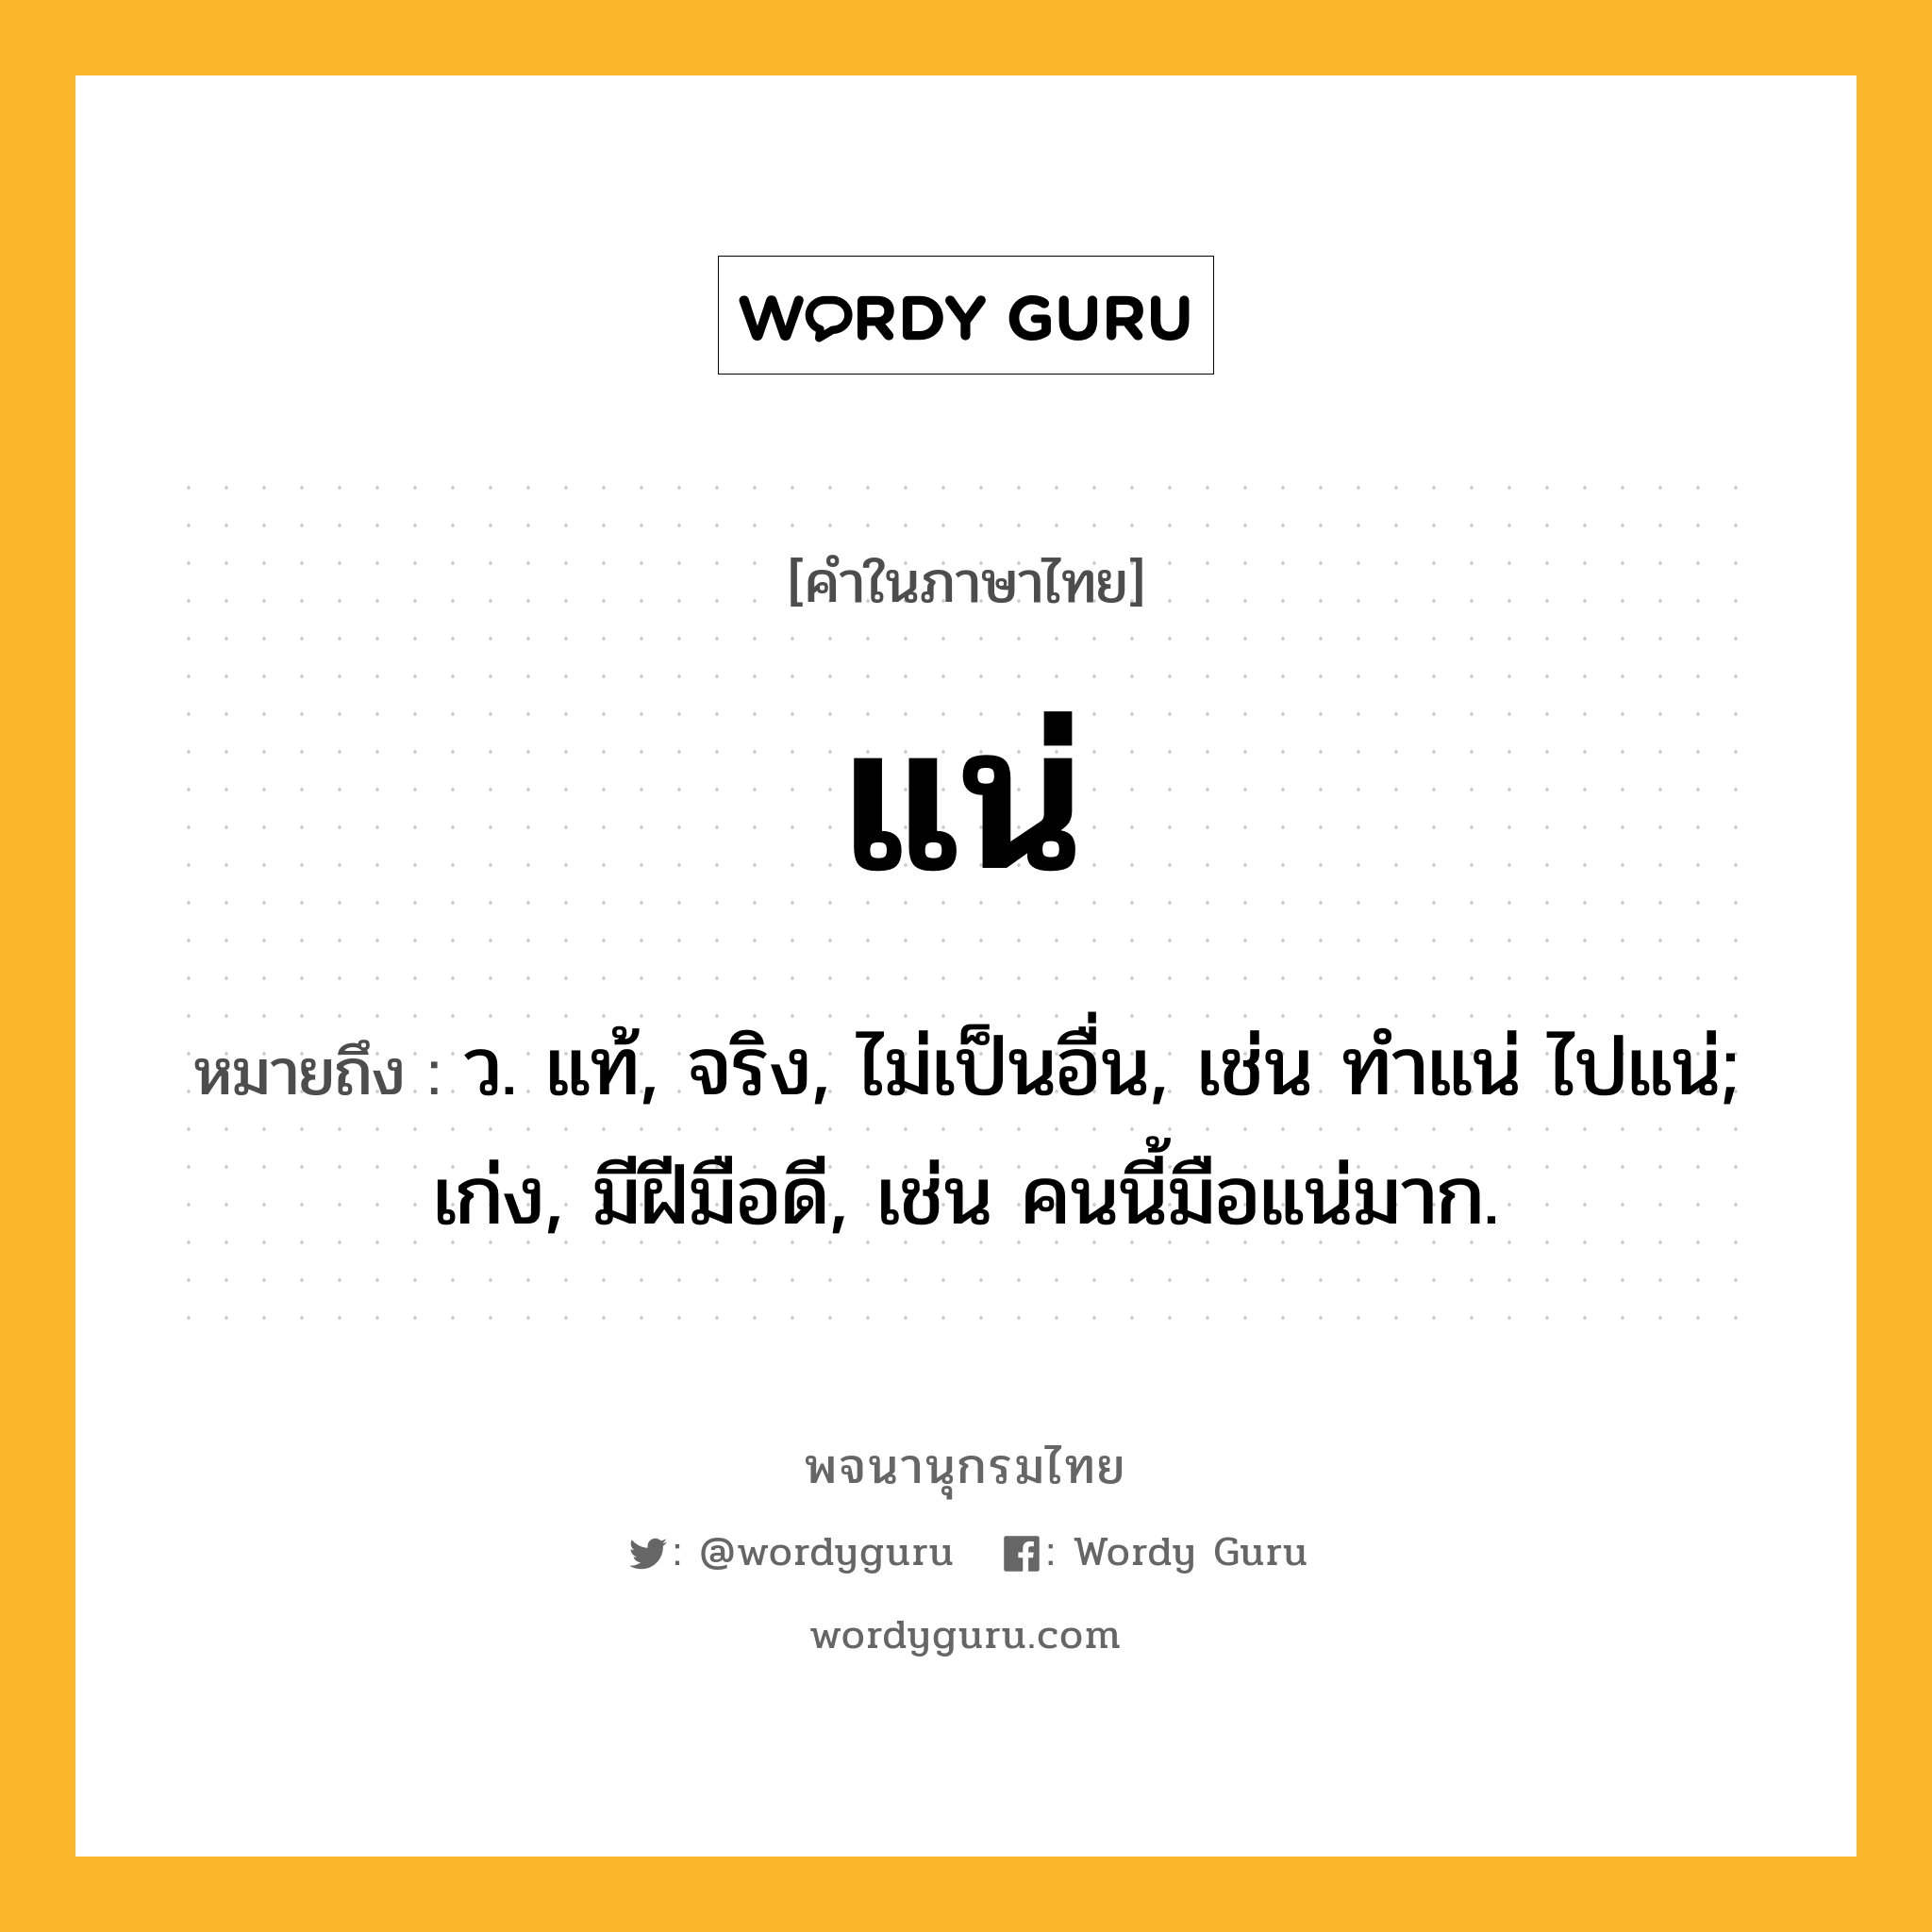 แน่ ความหมาย หมายถึงอะไร?, คำในภาษาไทย แน่ หมายถึง ว. แท้, จริง, ไม่เป็นอื่น, เช่น ทําแน่ ไปแน่; เก่ง, มีฝีมือดี, เช่น คนนี้มือแน่มาก.